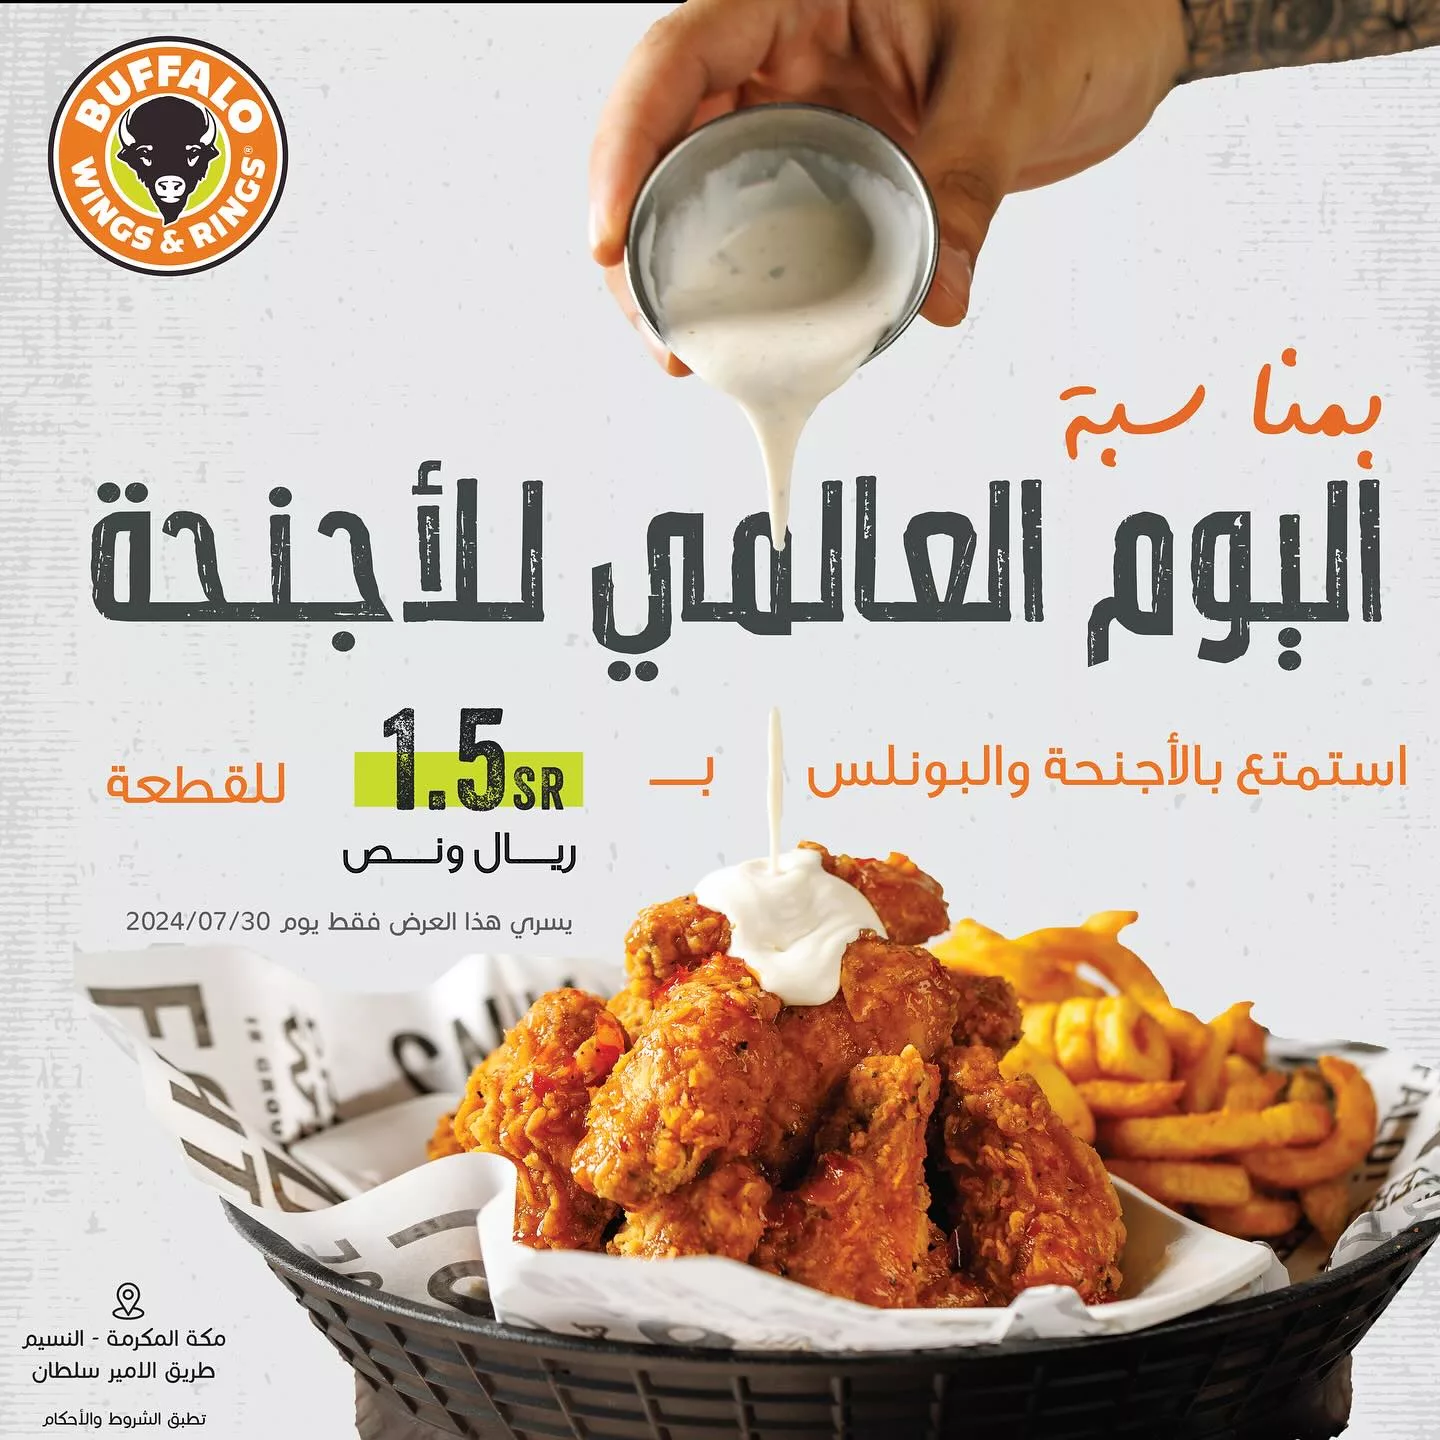 453187420 18067388494562686 4606915752988267163 n jpg - عروض المطاعم السعودية صفحة واحدة | استمتع بأشهي الوجبات باقل الاسعار